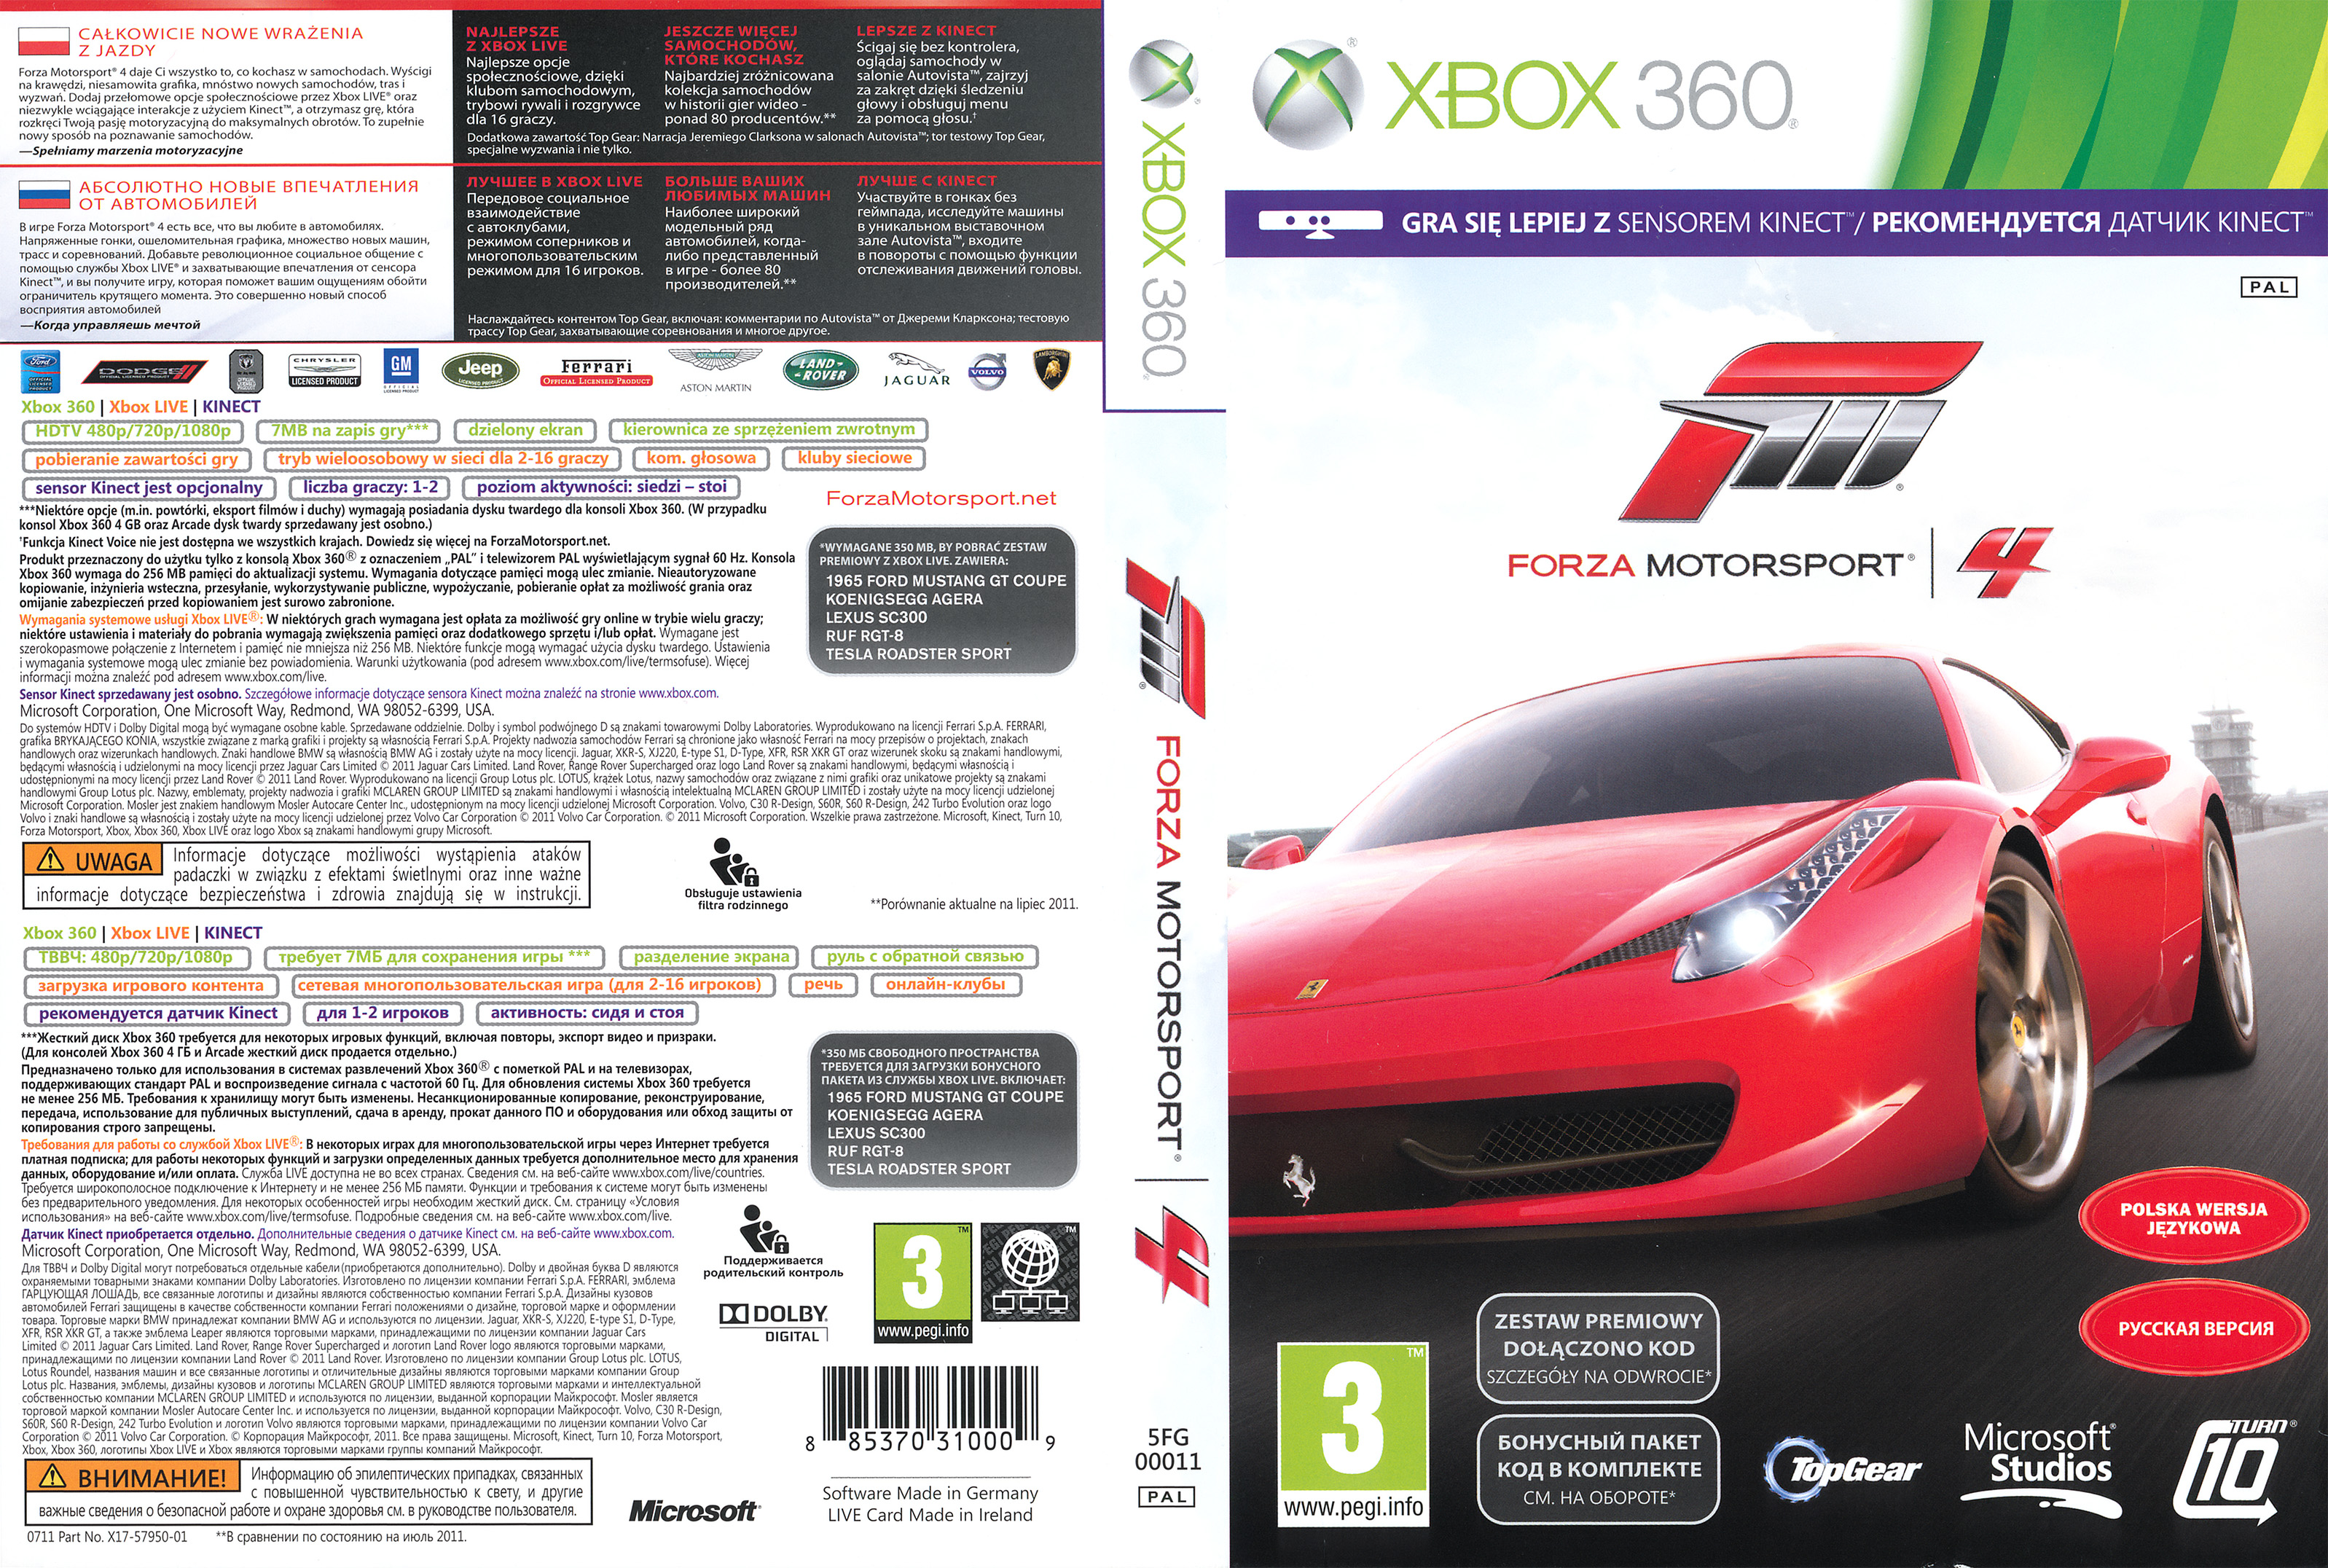 Forza 4 Xbox 360 Demo Download